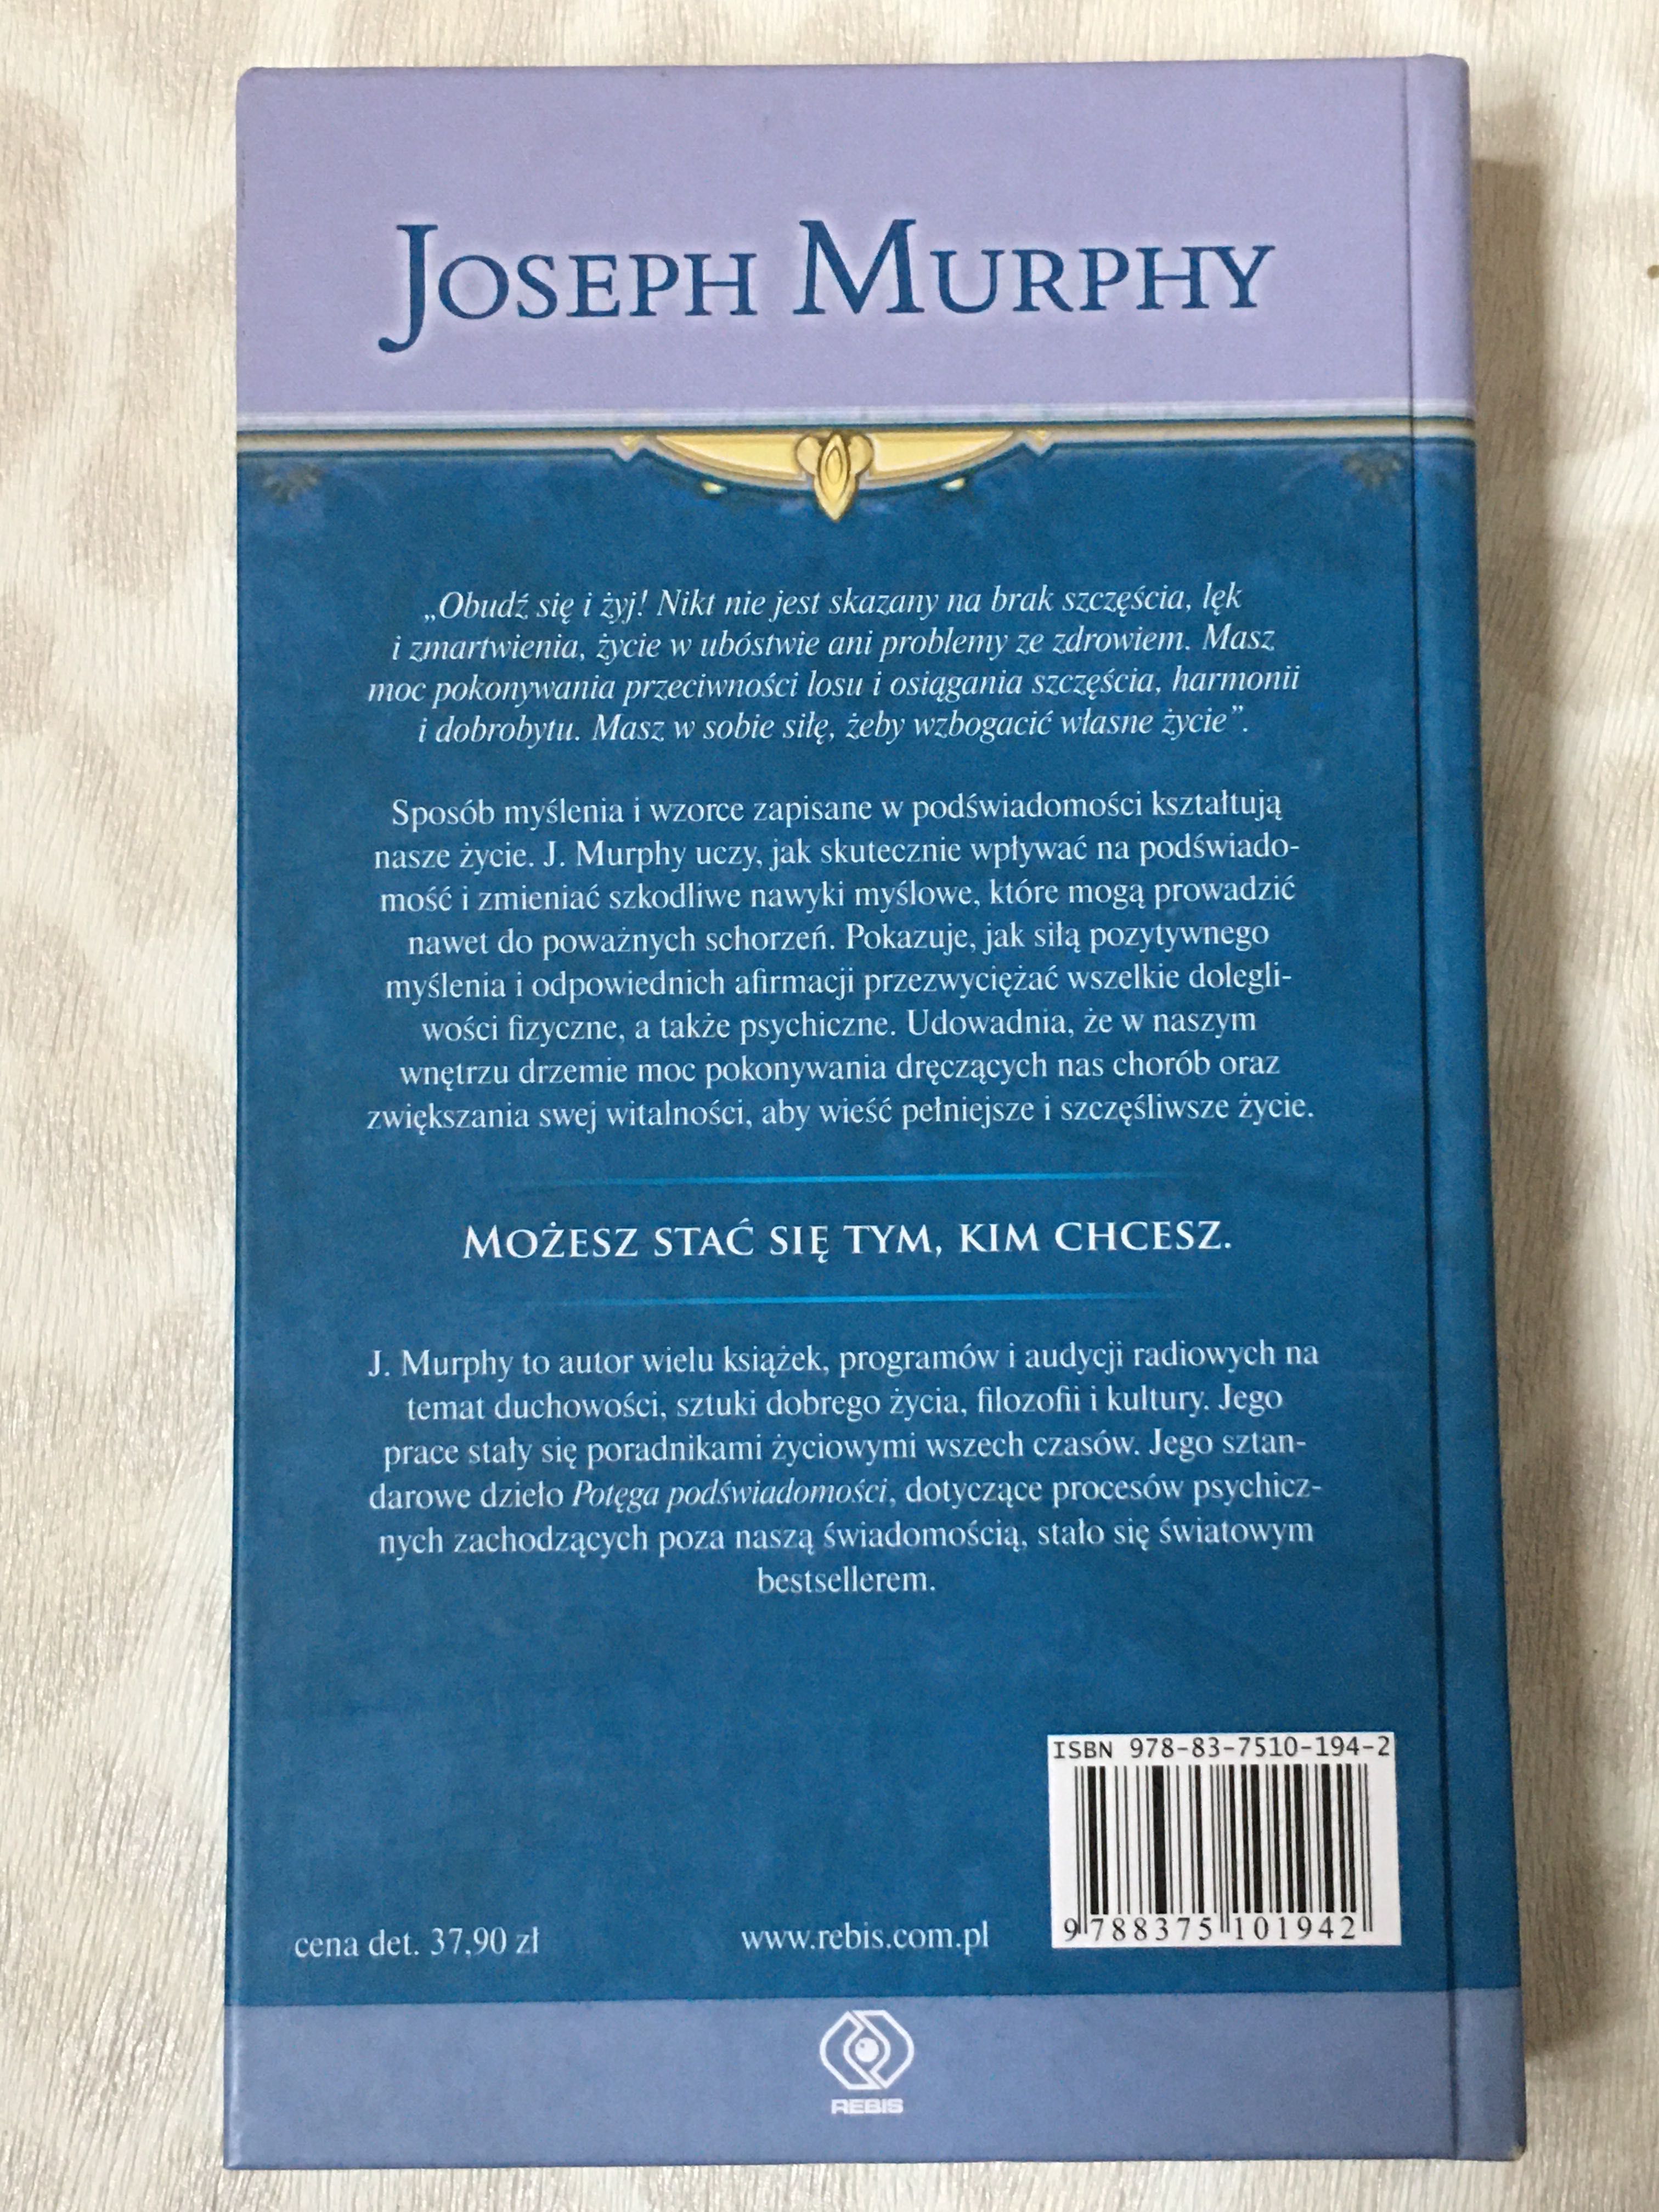 Zyskaj zdrowie i energię życiową * Księga 4  - Joseph Murphy